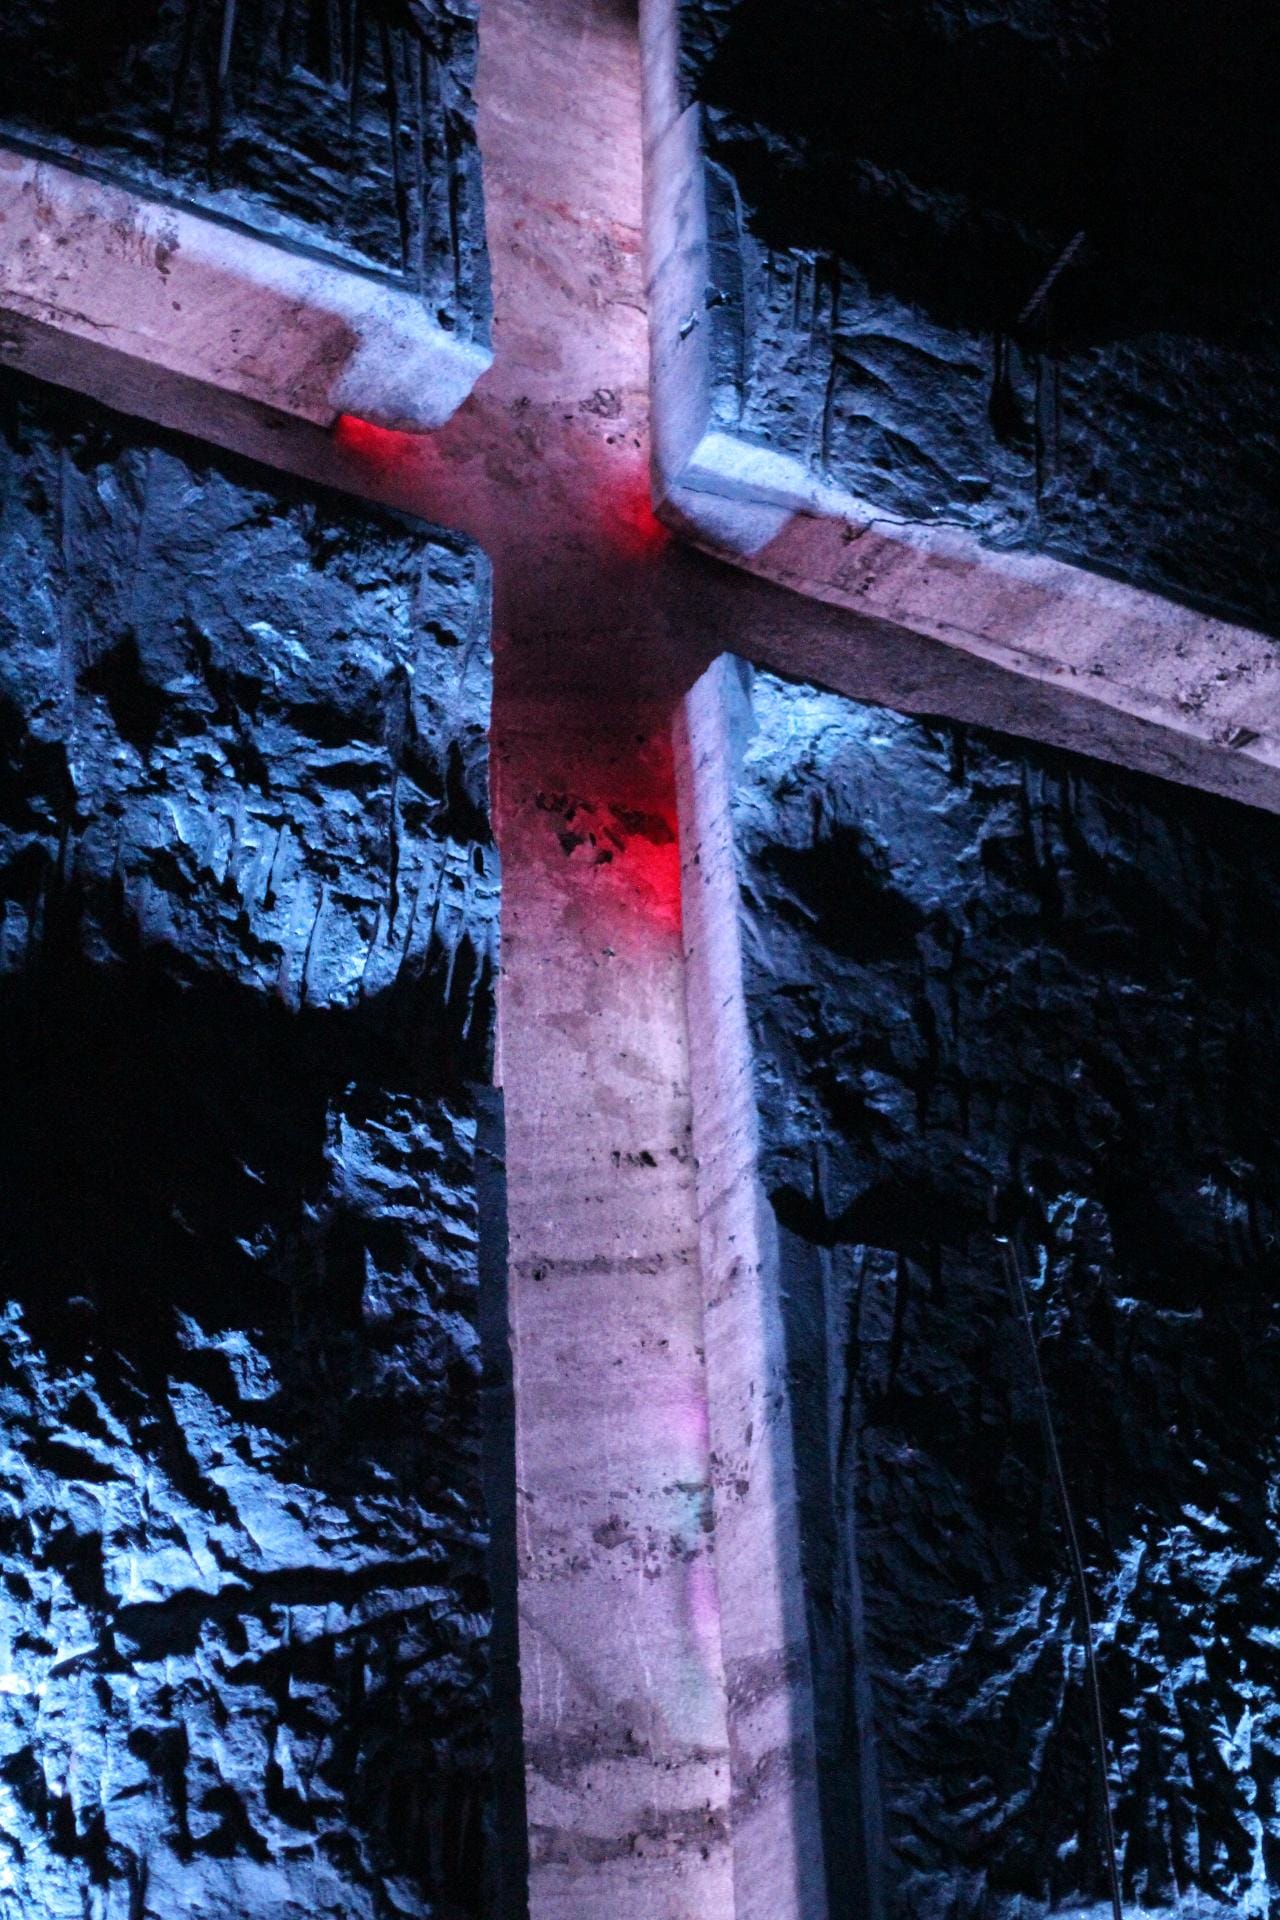 Das riesige Kreuz wirkt aus der Ferne massiv. Bei genauem Hinschauen offenbart sich: Es ist hohl, die Form entsteht durch die Beleuchtung.